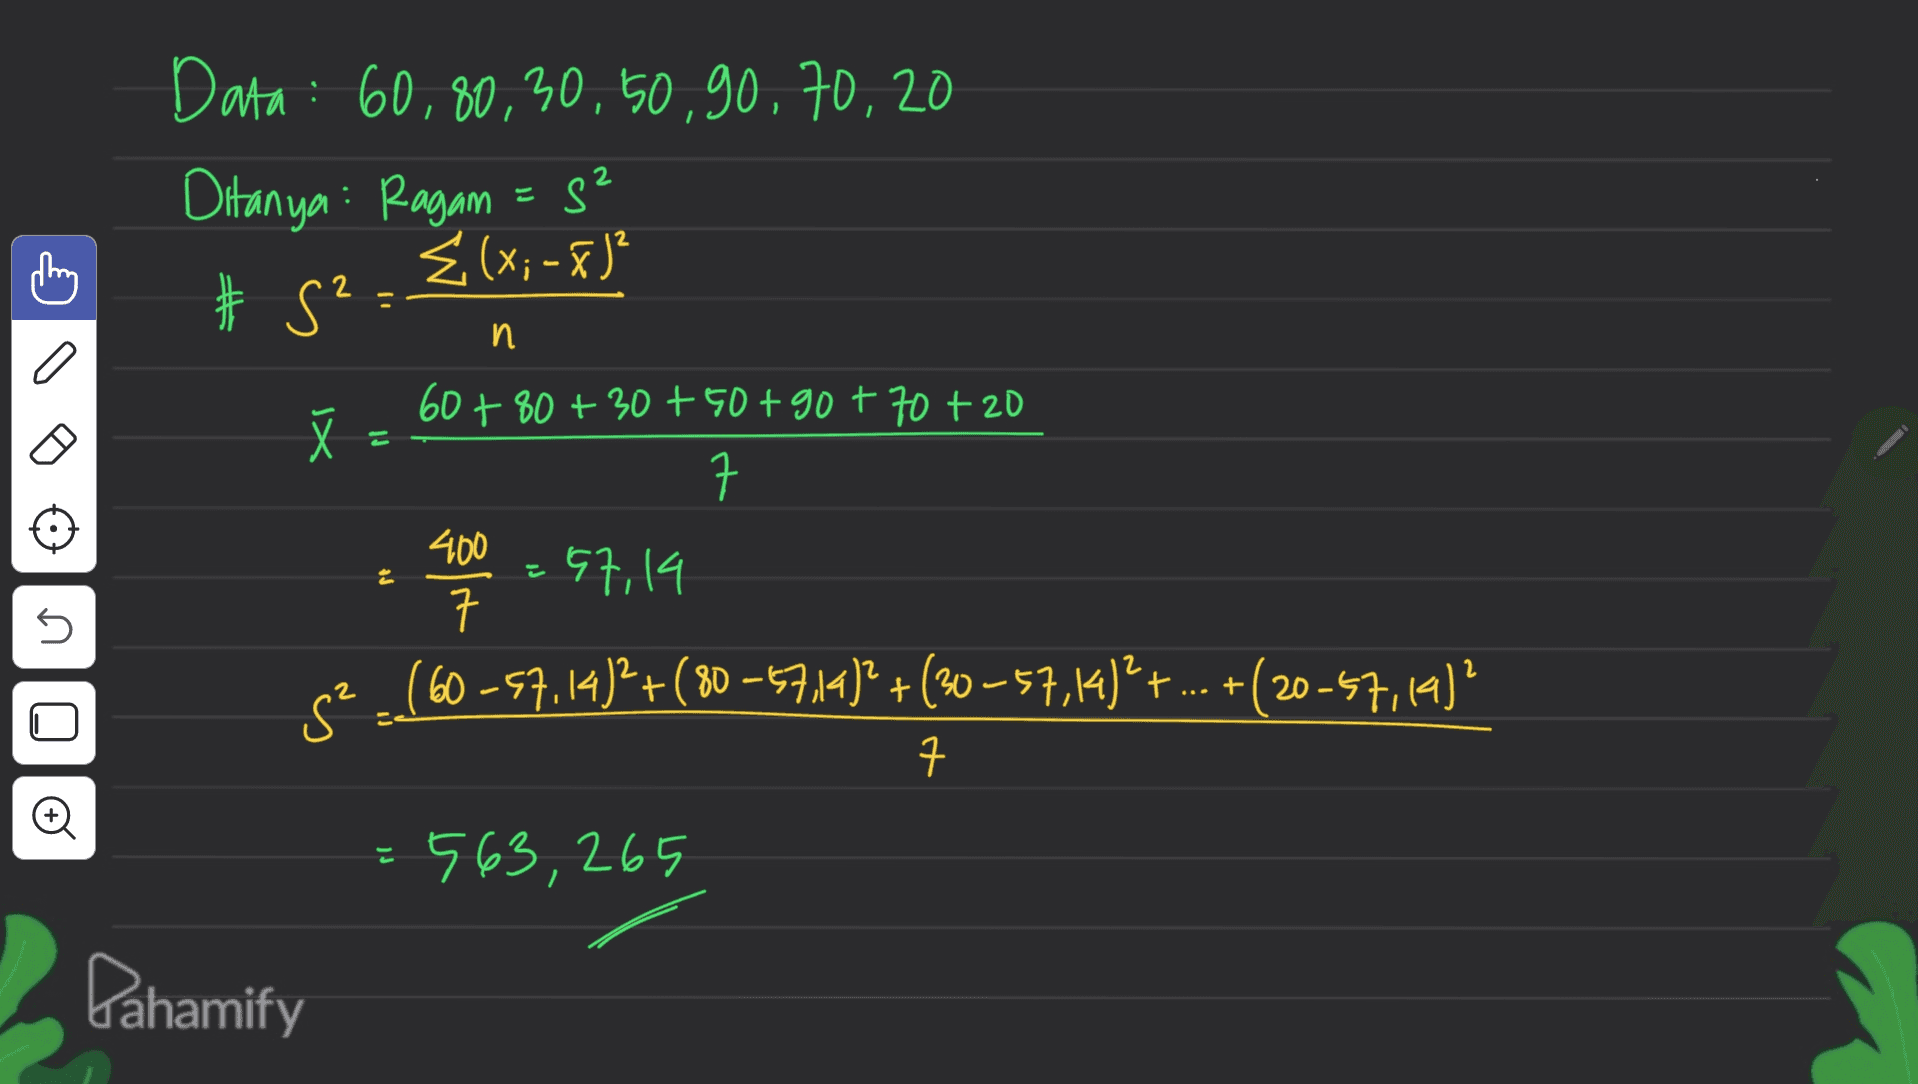 ching 2 n Data : 60,80,30, 50,90,70,20 Ditanya: Ragam = s² Ź (x; -x)² # S² 60+80+30+ 50+90+70 + 20 ㅋ 400 57,14 ㅋ 52 ]}? .(60-57.14)2 + (80 -5714)? + (30-57,14)2 + ... +(20-57,14)? XI E त s +( 7 © 563,265 Pahamify 